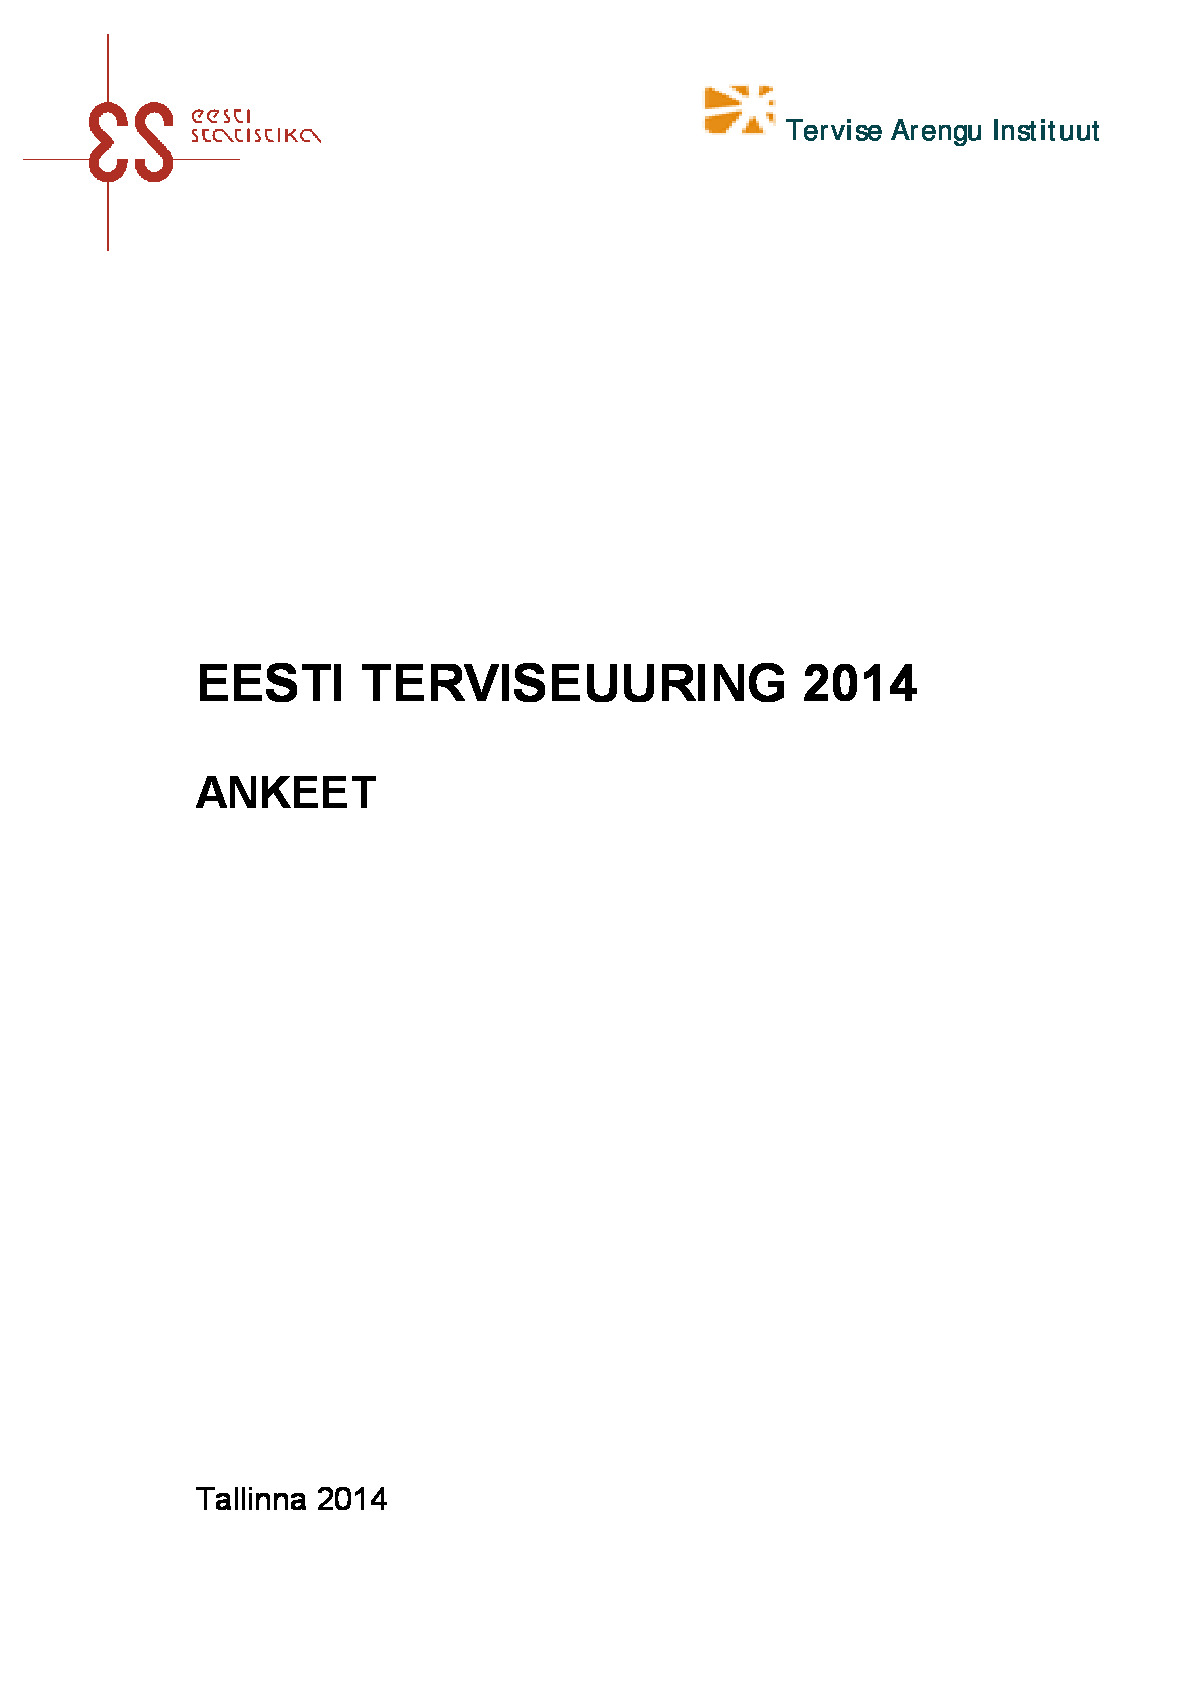 ETEU_2014_ankeet_EE.pdf